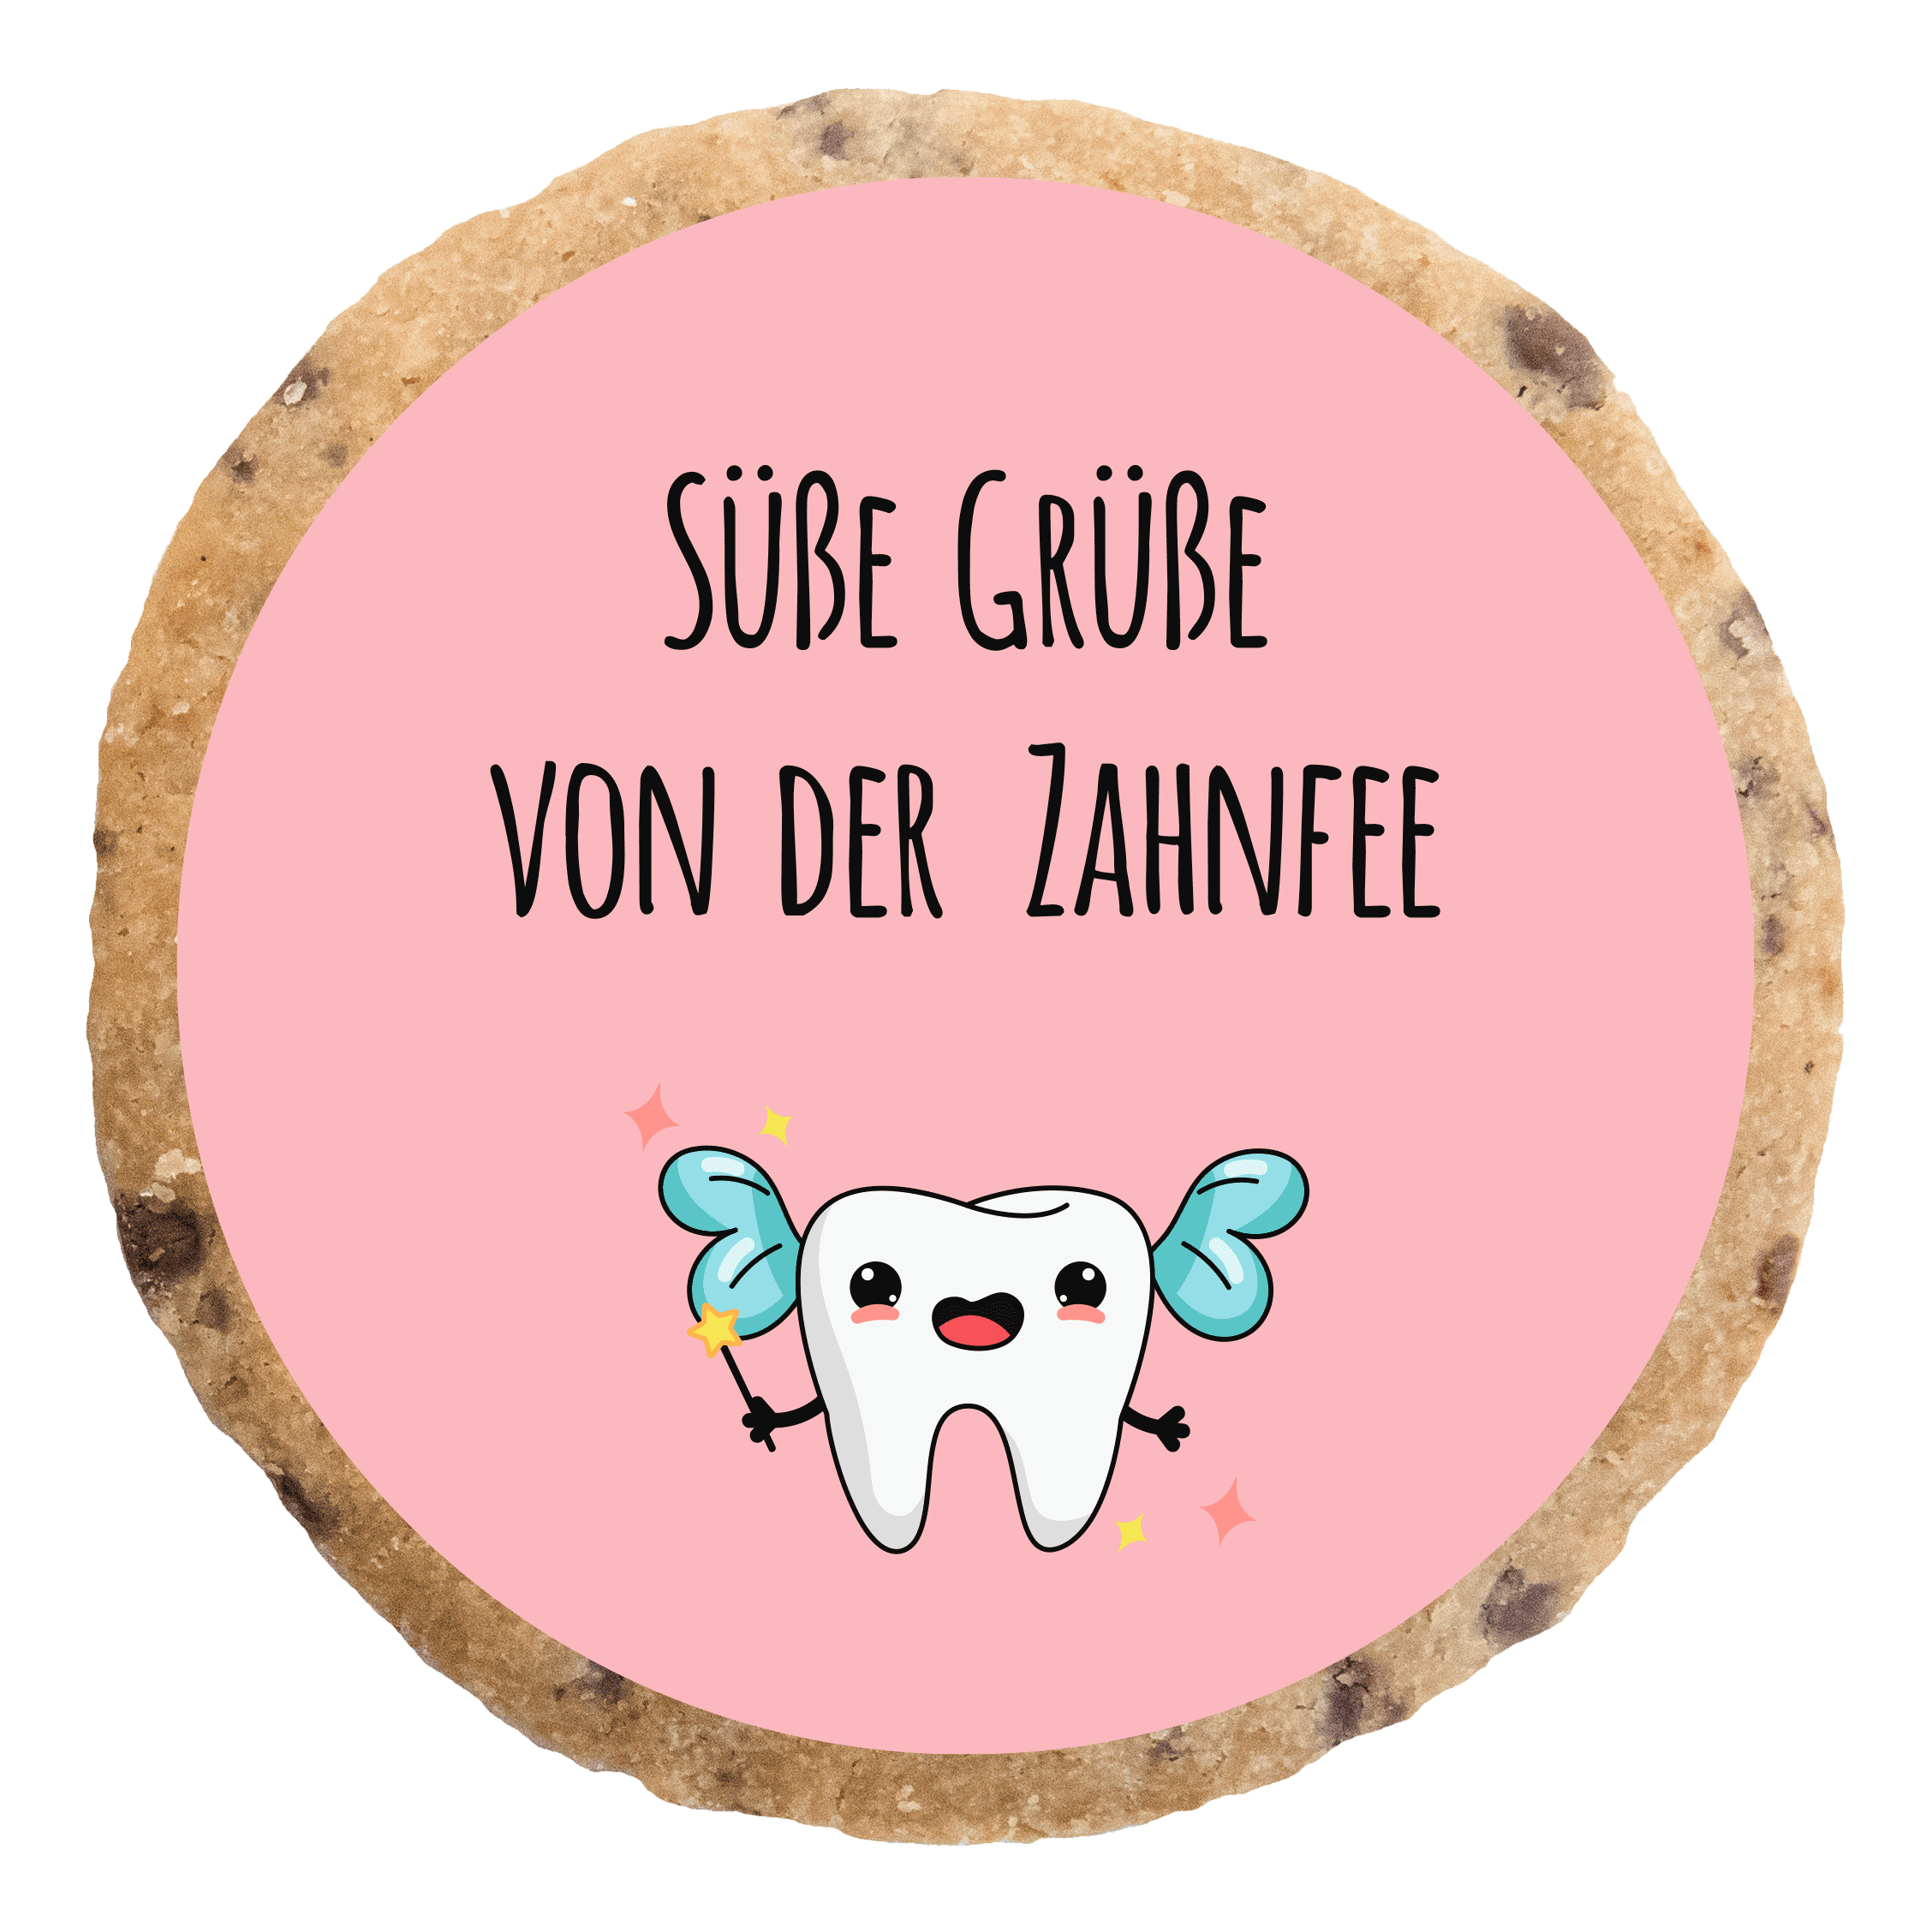 "Süße Grüße Zahnfee 2" MotivKEKS